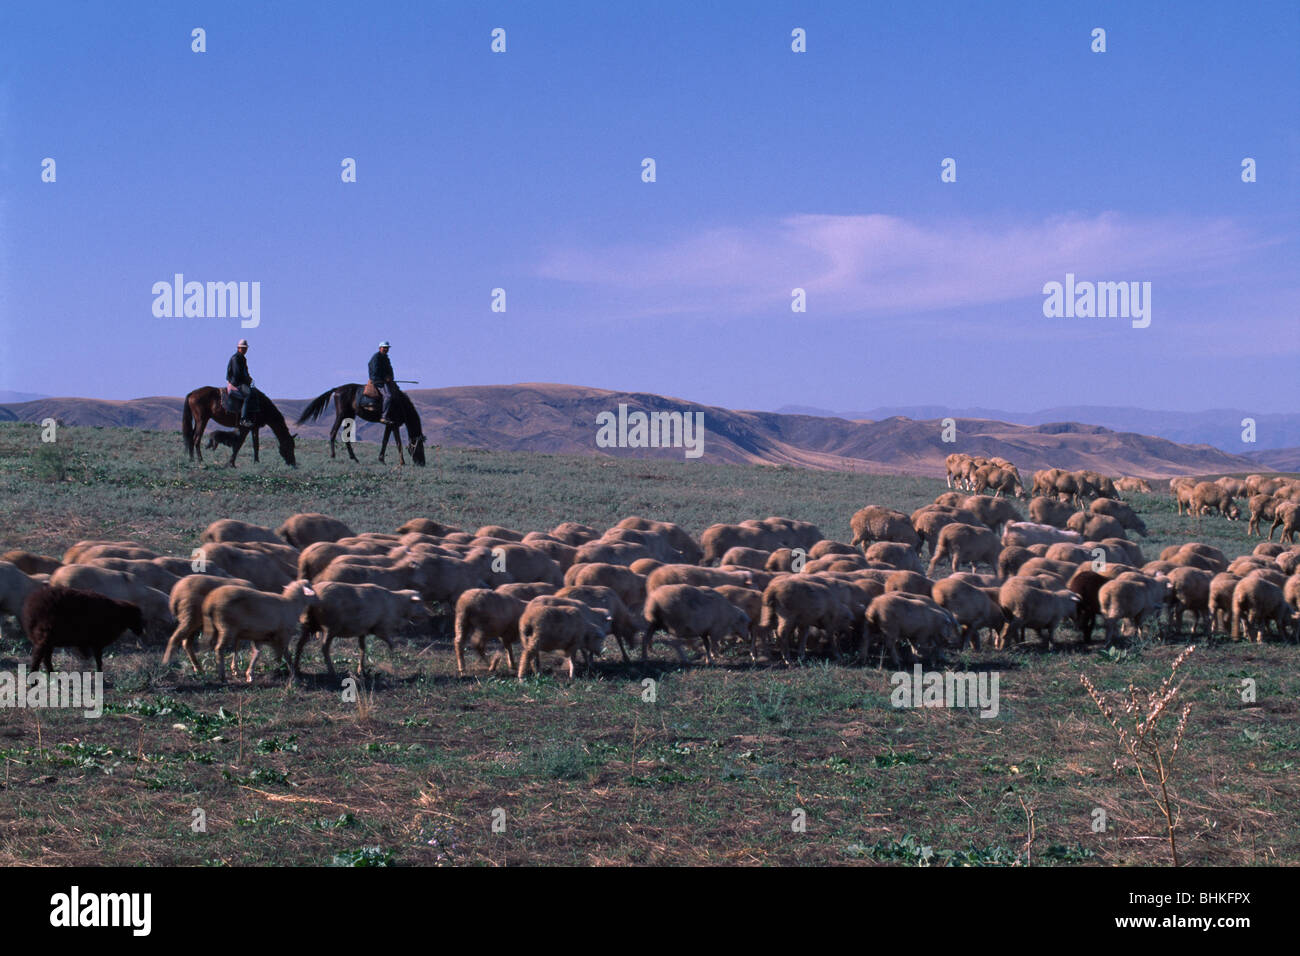 Kazakh herdsman herding sheep, Altay Mountain in the distance, South Almaty, Kazakhstan Stock Photo